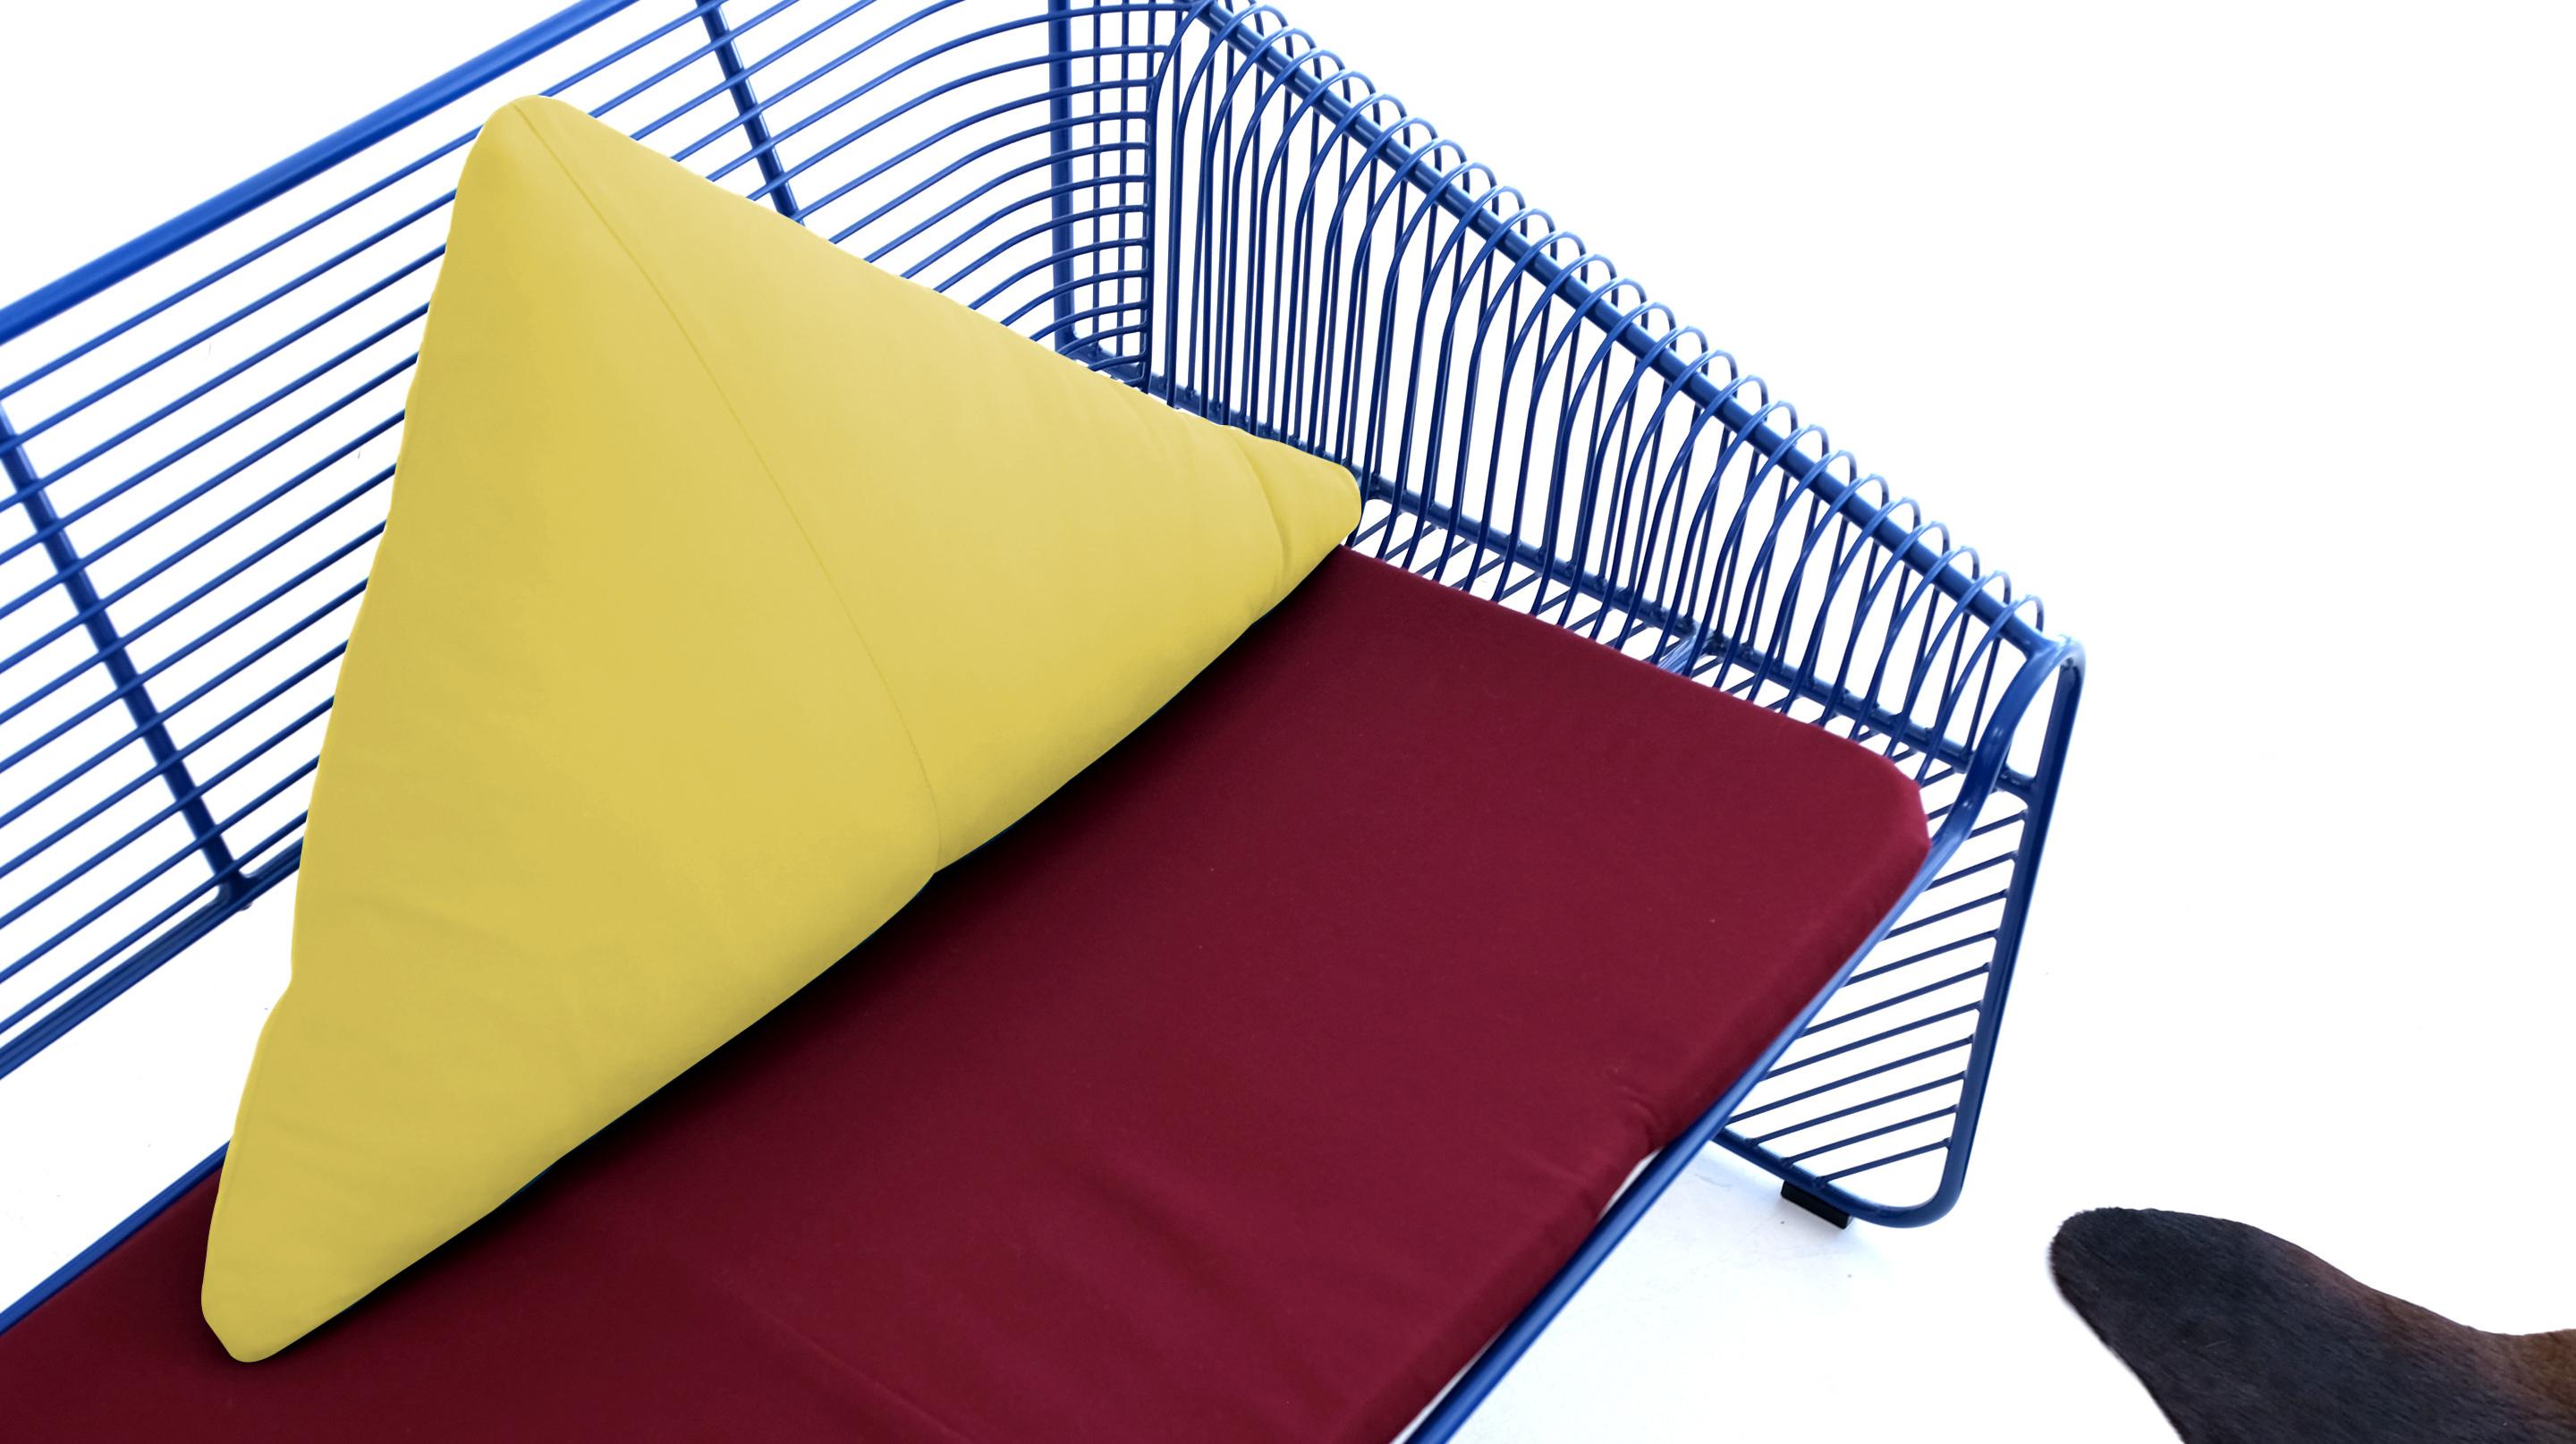 FARBENFROHE IDEEN FÜR HEIM-AKZENTE

Unsere Triangle Throw Pillows sind mit Daunen gefüllt und in einer Vielzahl von Sunbrella-Stoff-Farben für Ihr Zuhause erhältlich. Bei einer Auswahl von mehr als 10 Farben finden Sie sicher die Farbe, die Sie